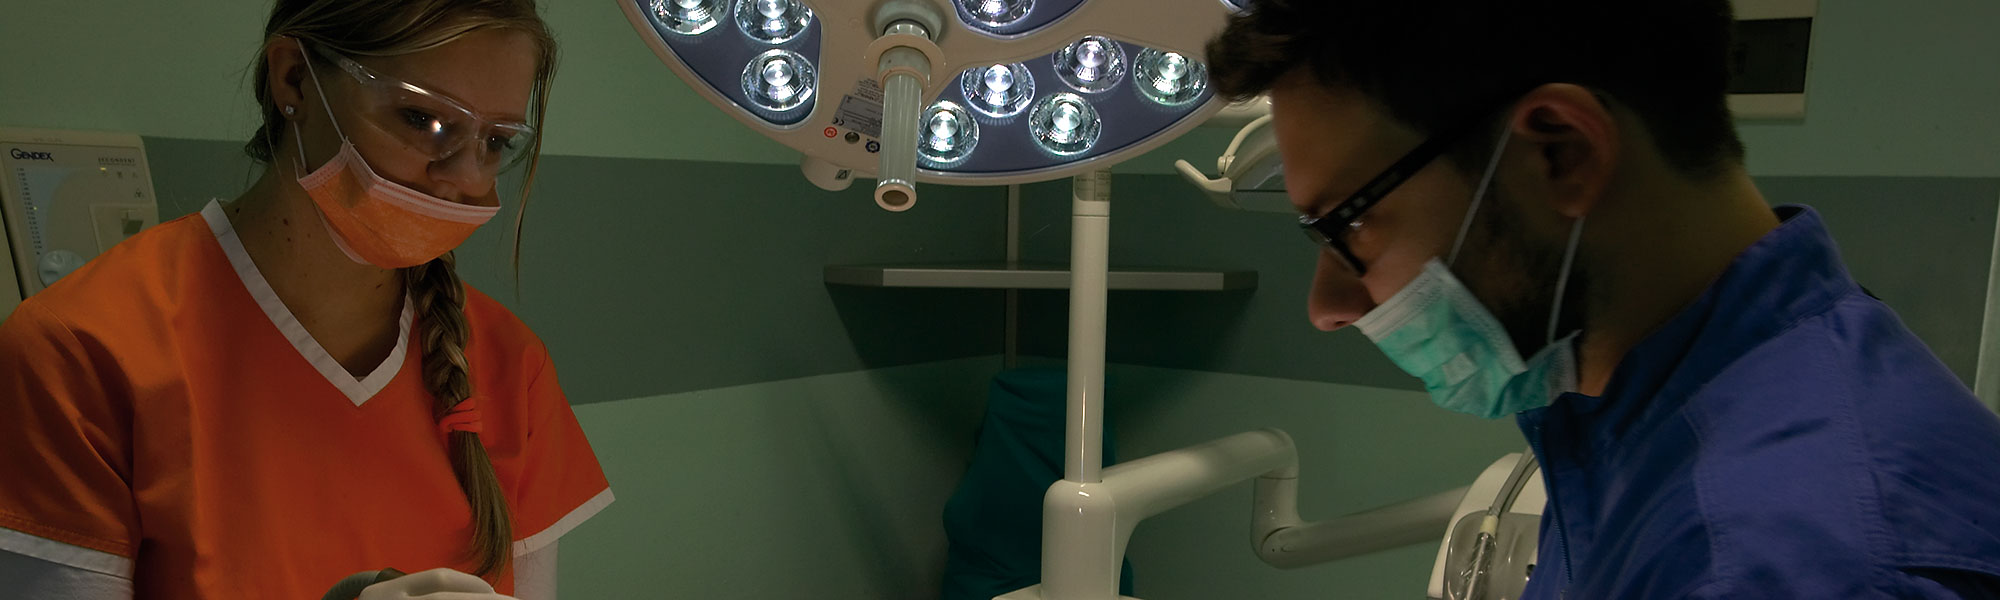 operazione odontoiatria implantologia